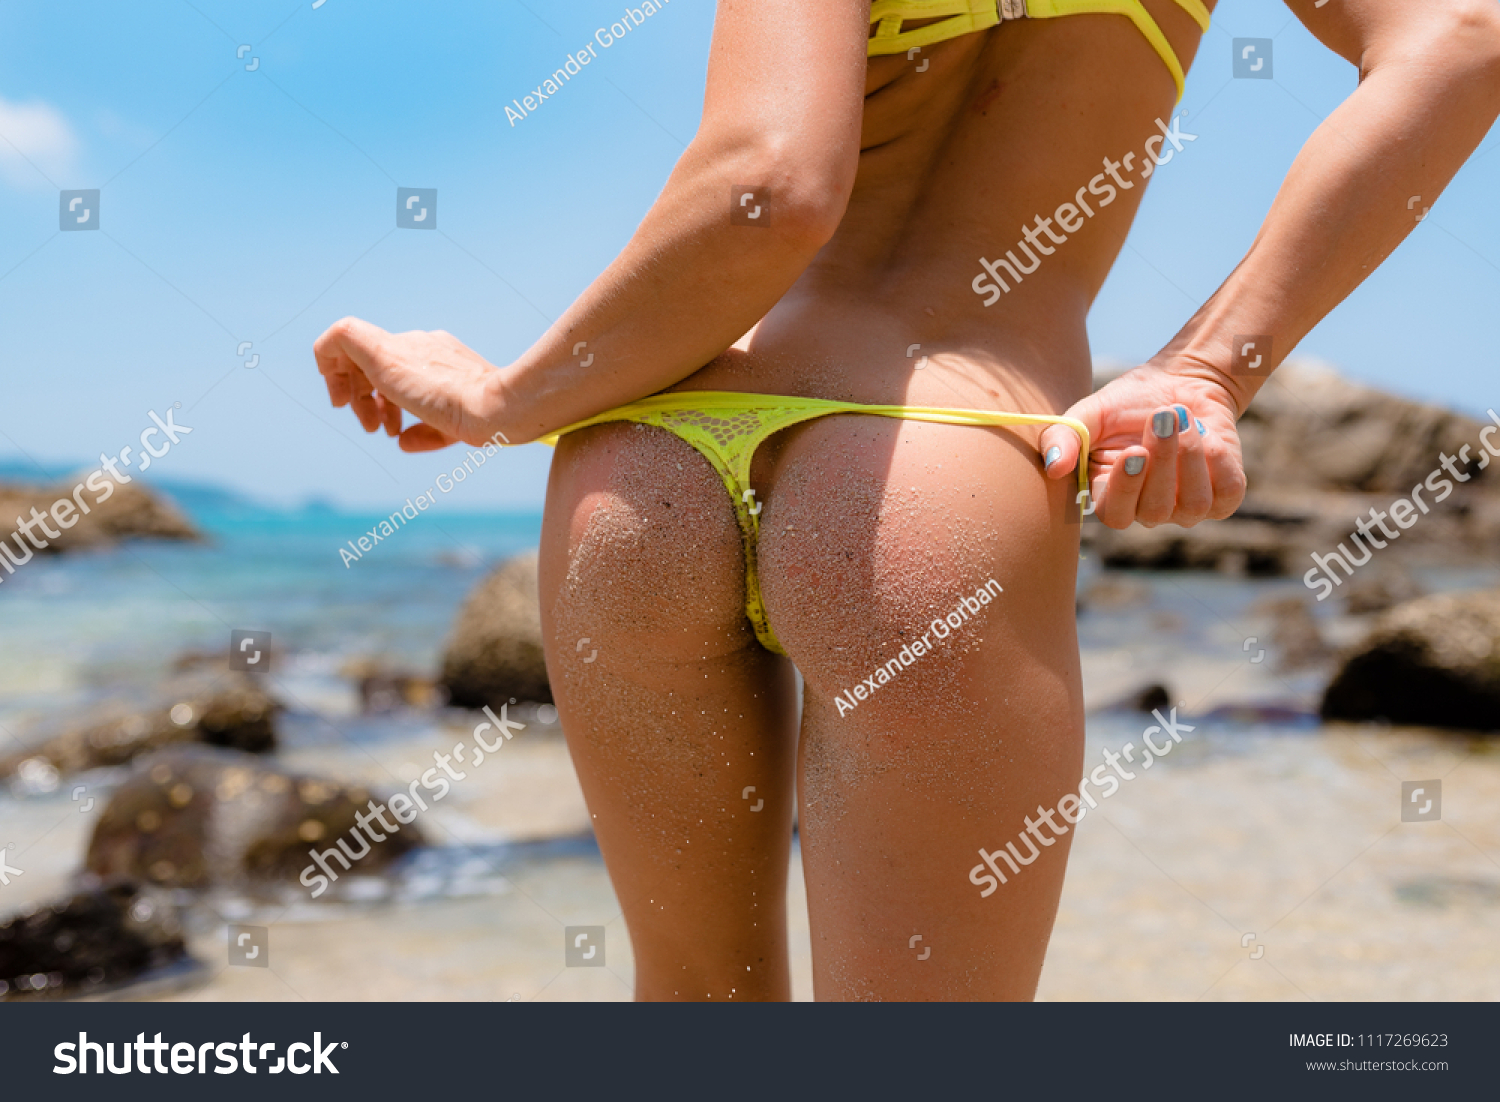 sexy ass bikini selfies nude gallerie